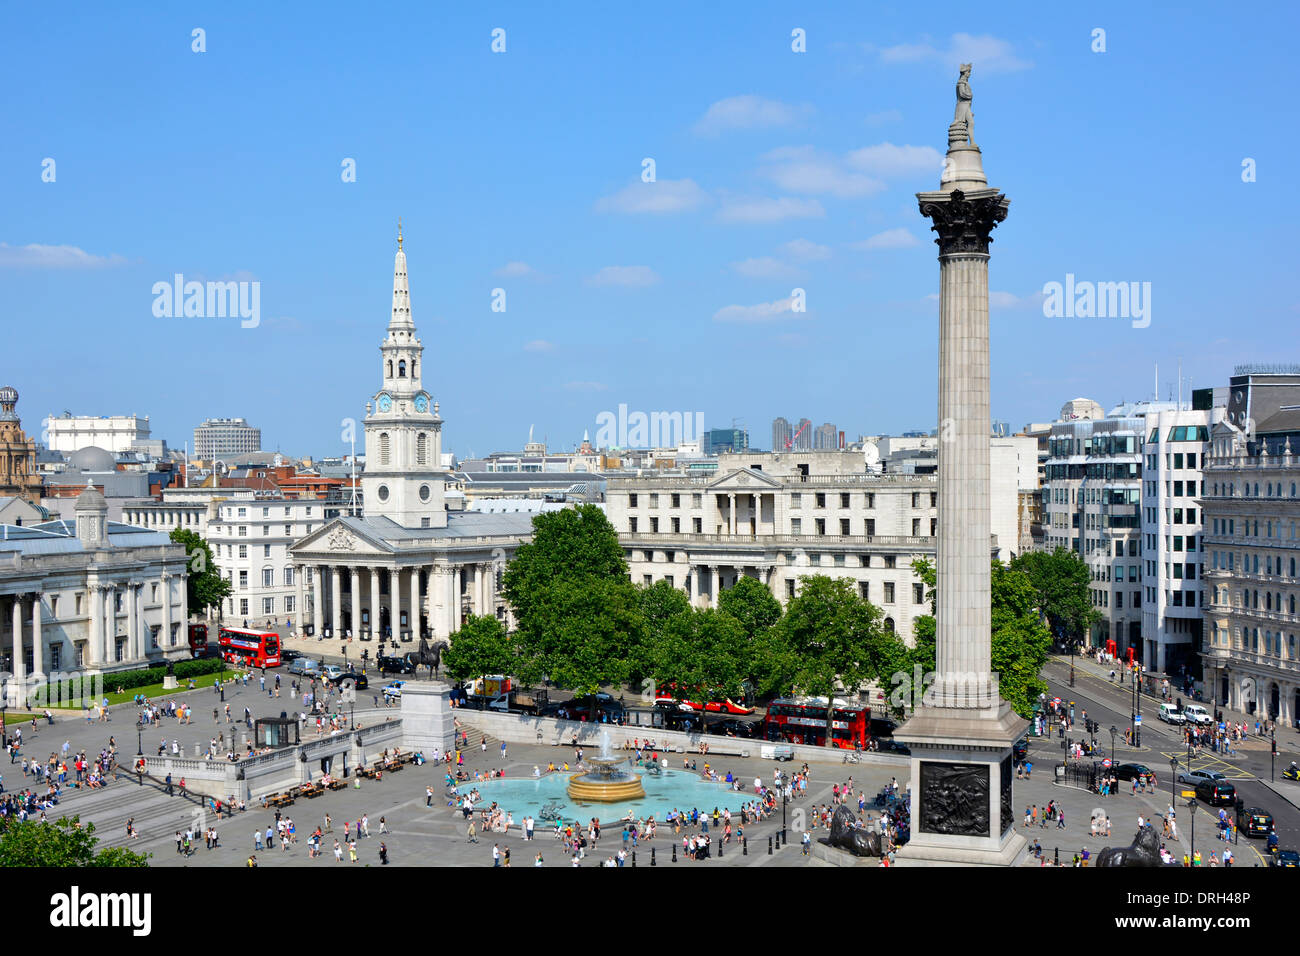 Vue aérienne sur les touristes à Trafalgar Square, fontaine et église St Martin-in-the-Fields avec colonne historique de Nelsons Royaume-Uni Banque D'Images